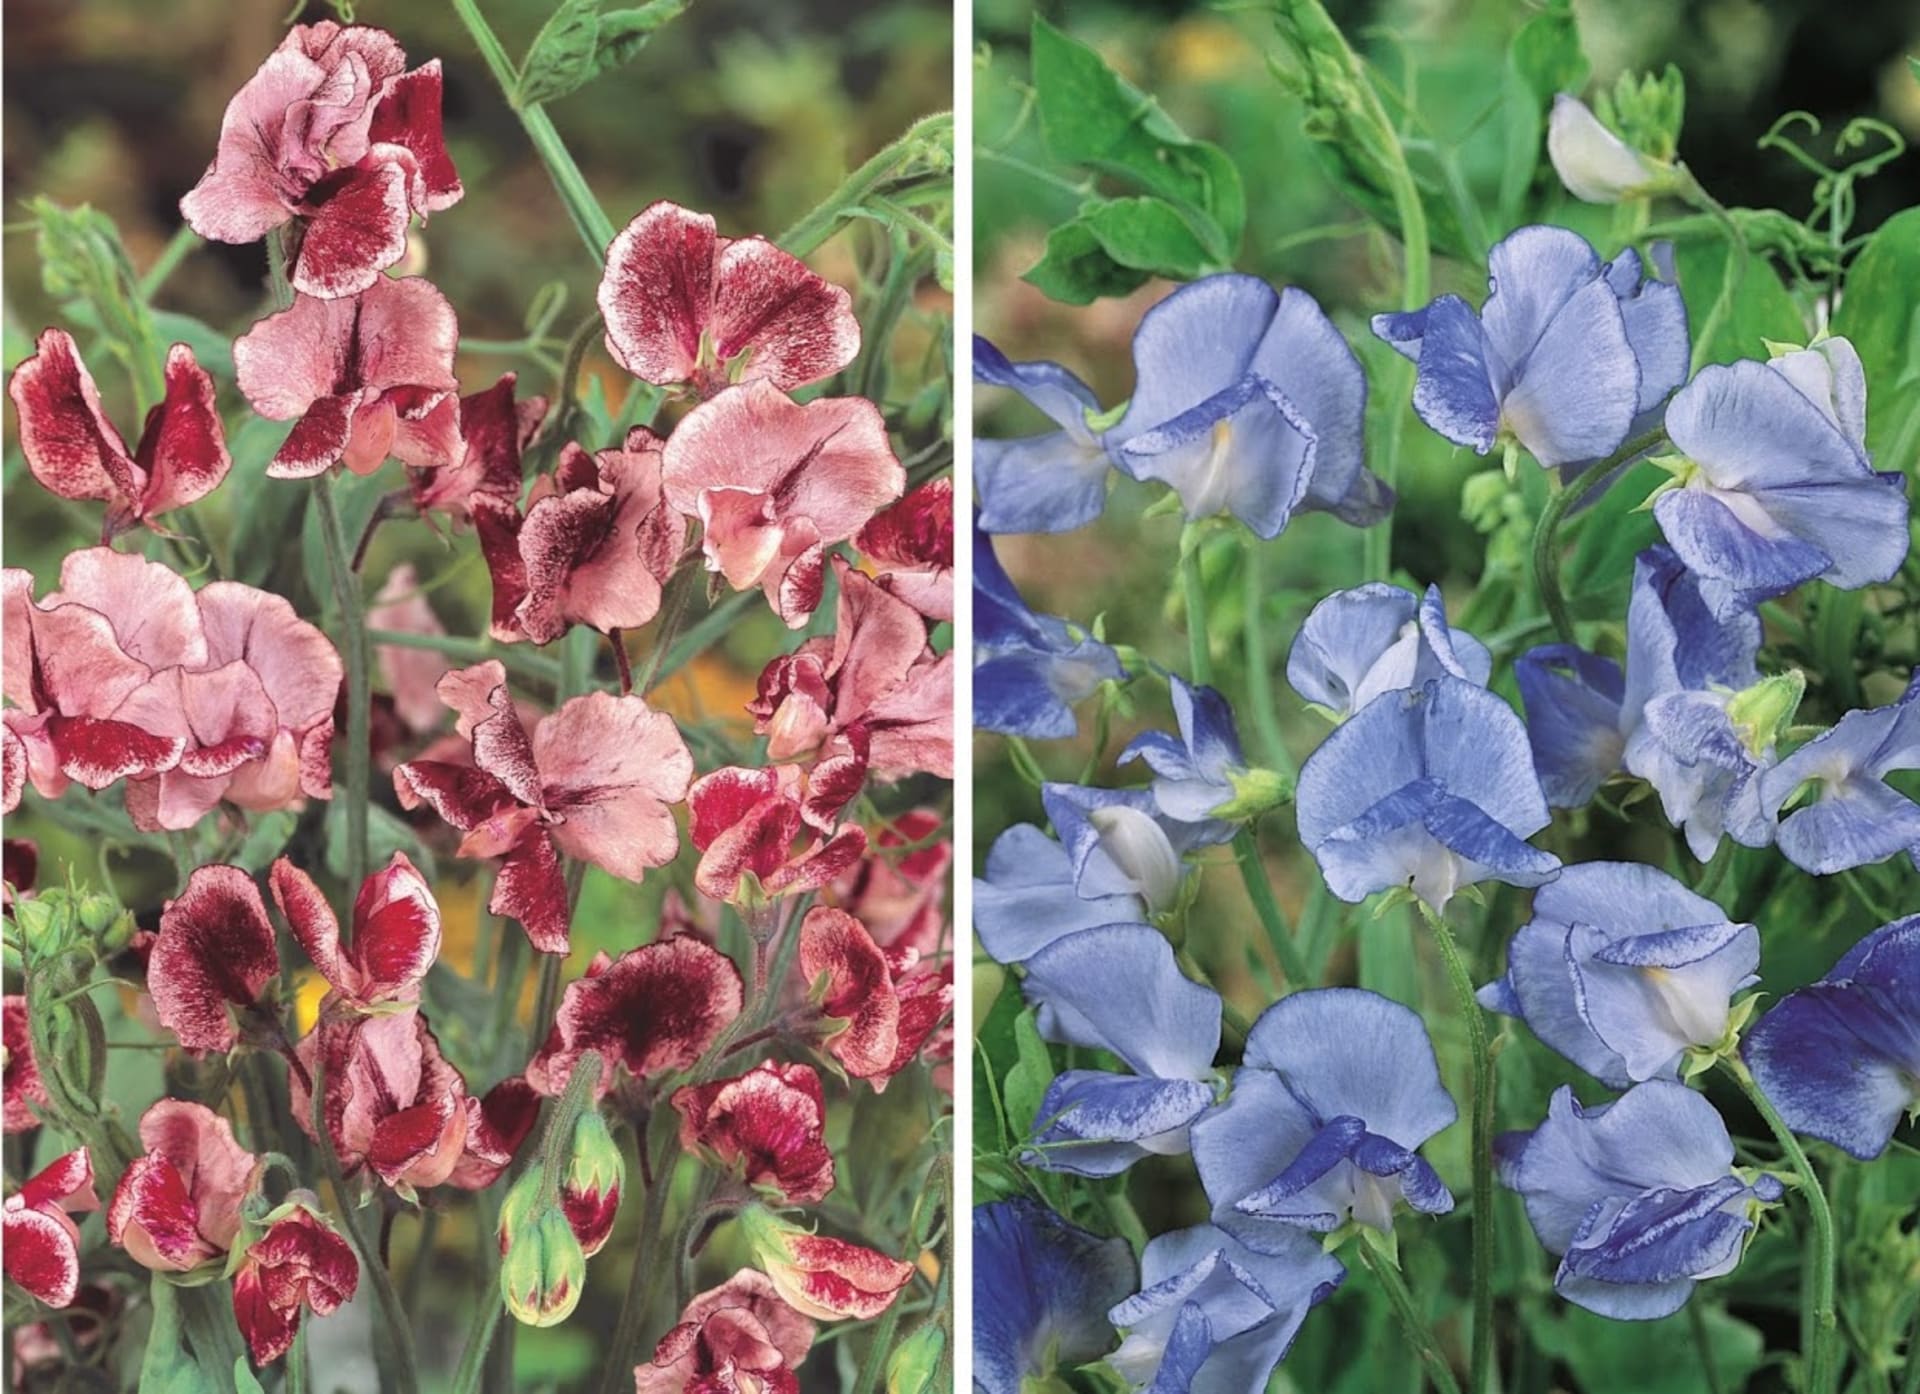 Skupina Ripple má zajímavé panašované květy na bílém podkladu. Kultivary Blue Ripple (modrofialový) a Crimsson Ripple (karmínový) mají voňavé květy, které jsou oblíbené k řezu, vyznačují se netradičním tmavým purpurovým a modrým žíháním na světlém podkladu.